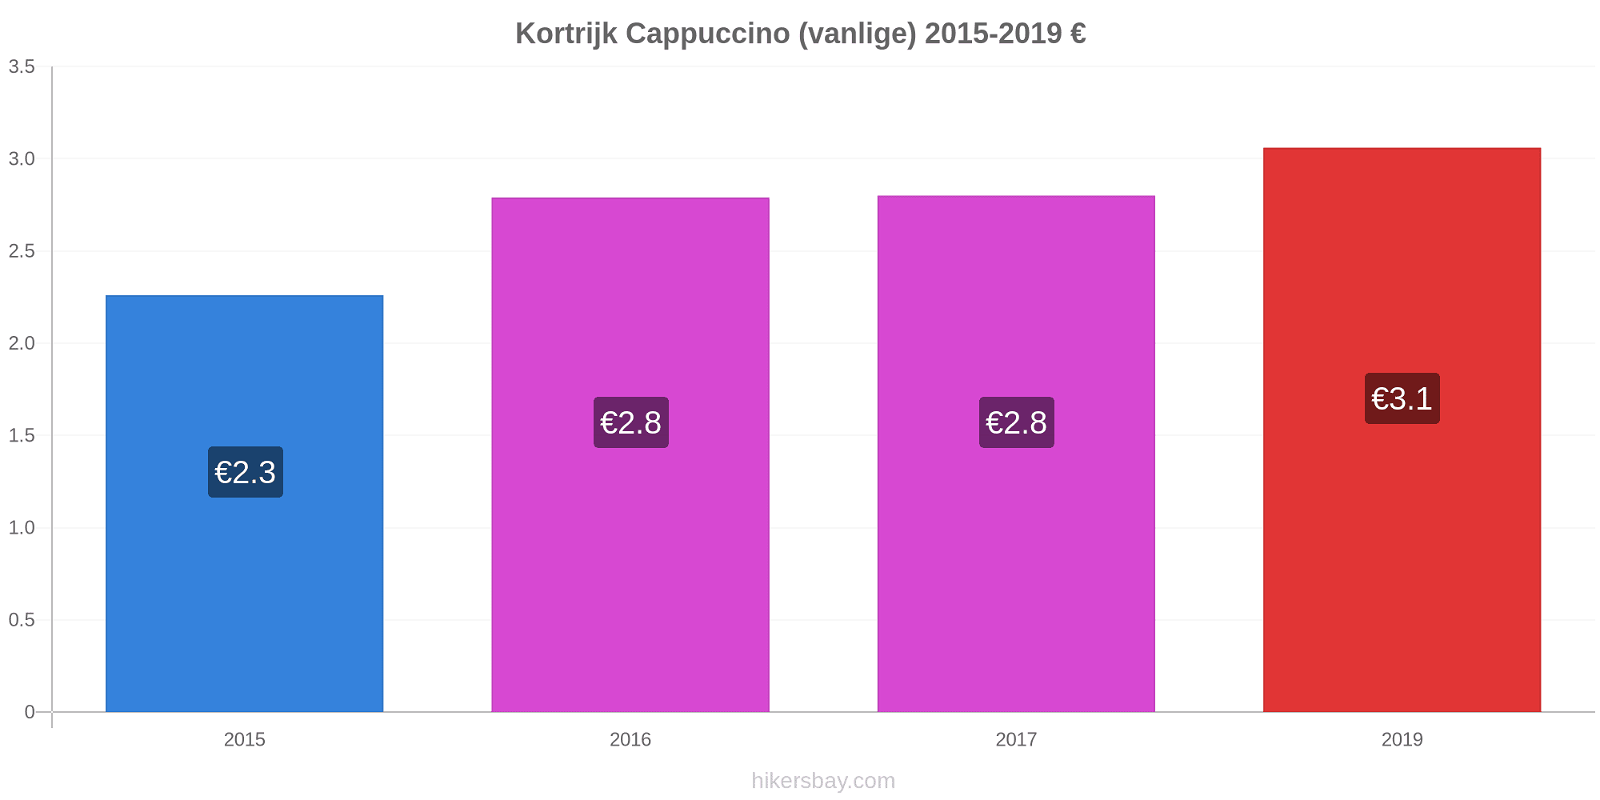 Kortrijk prisendringer Cappuccino (vanlige) hikersbay.com